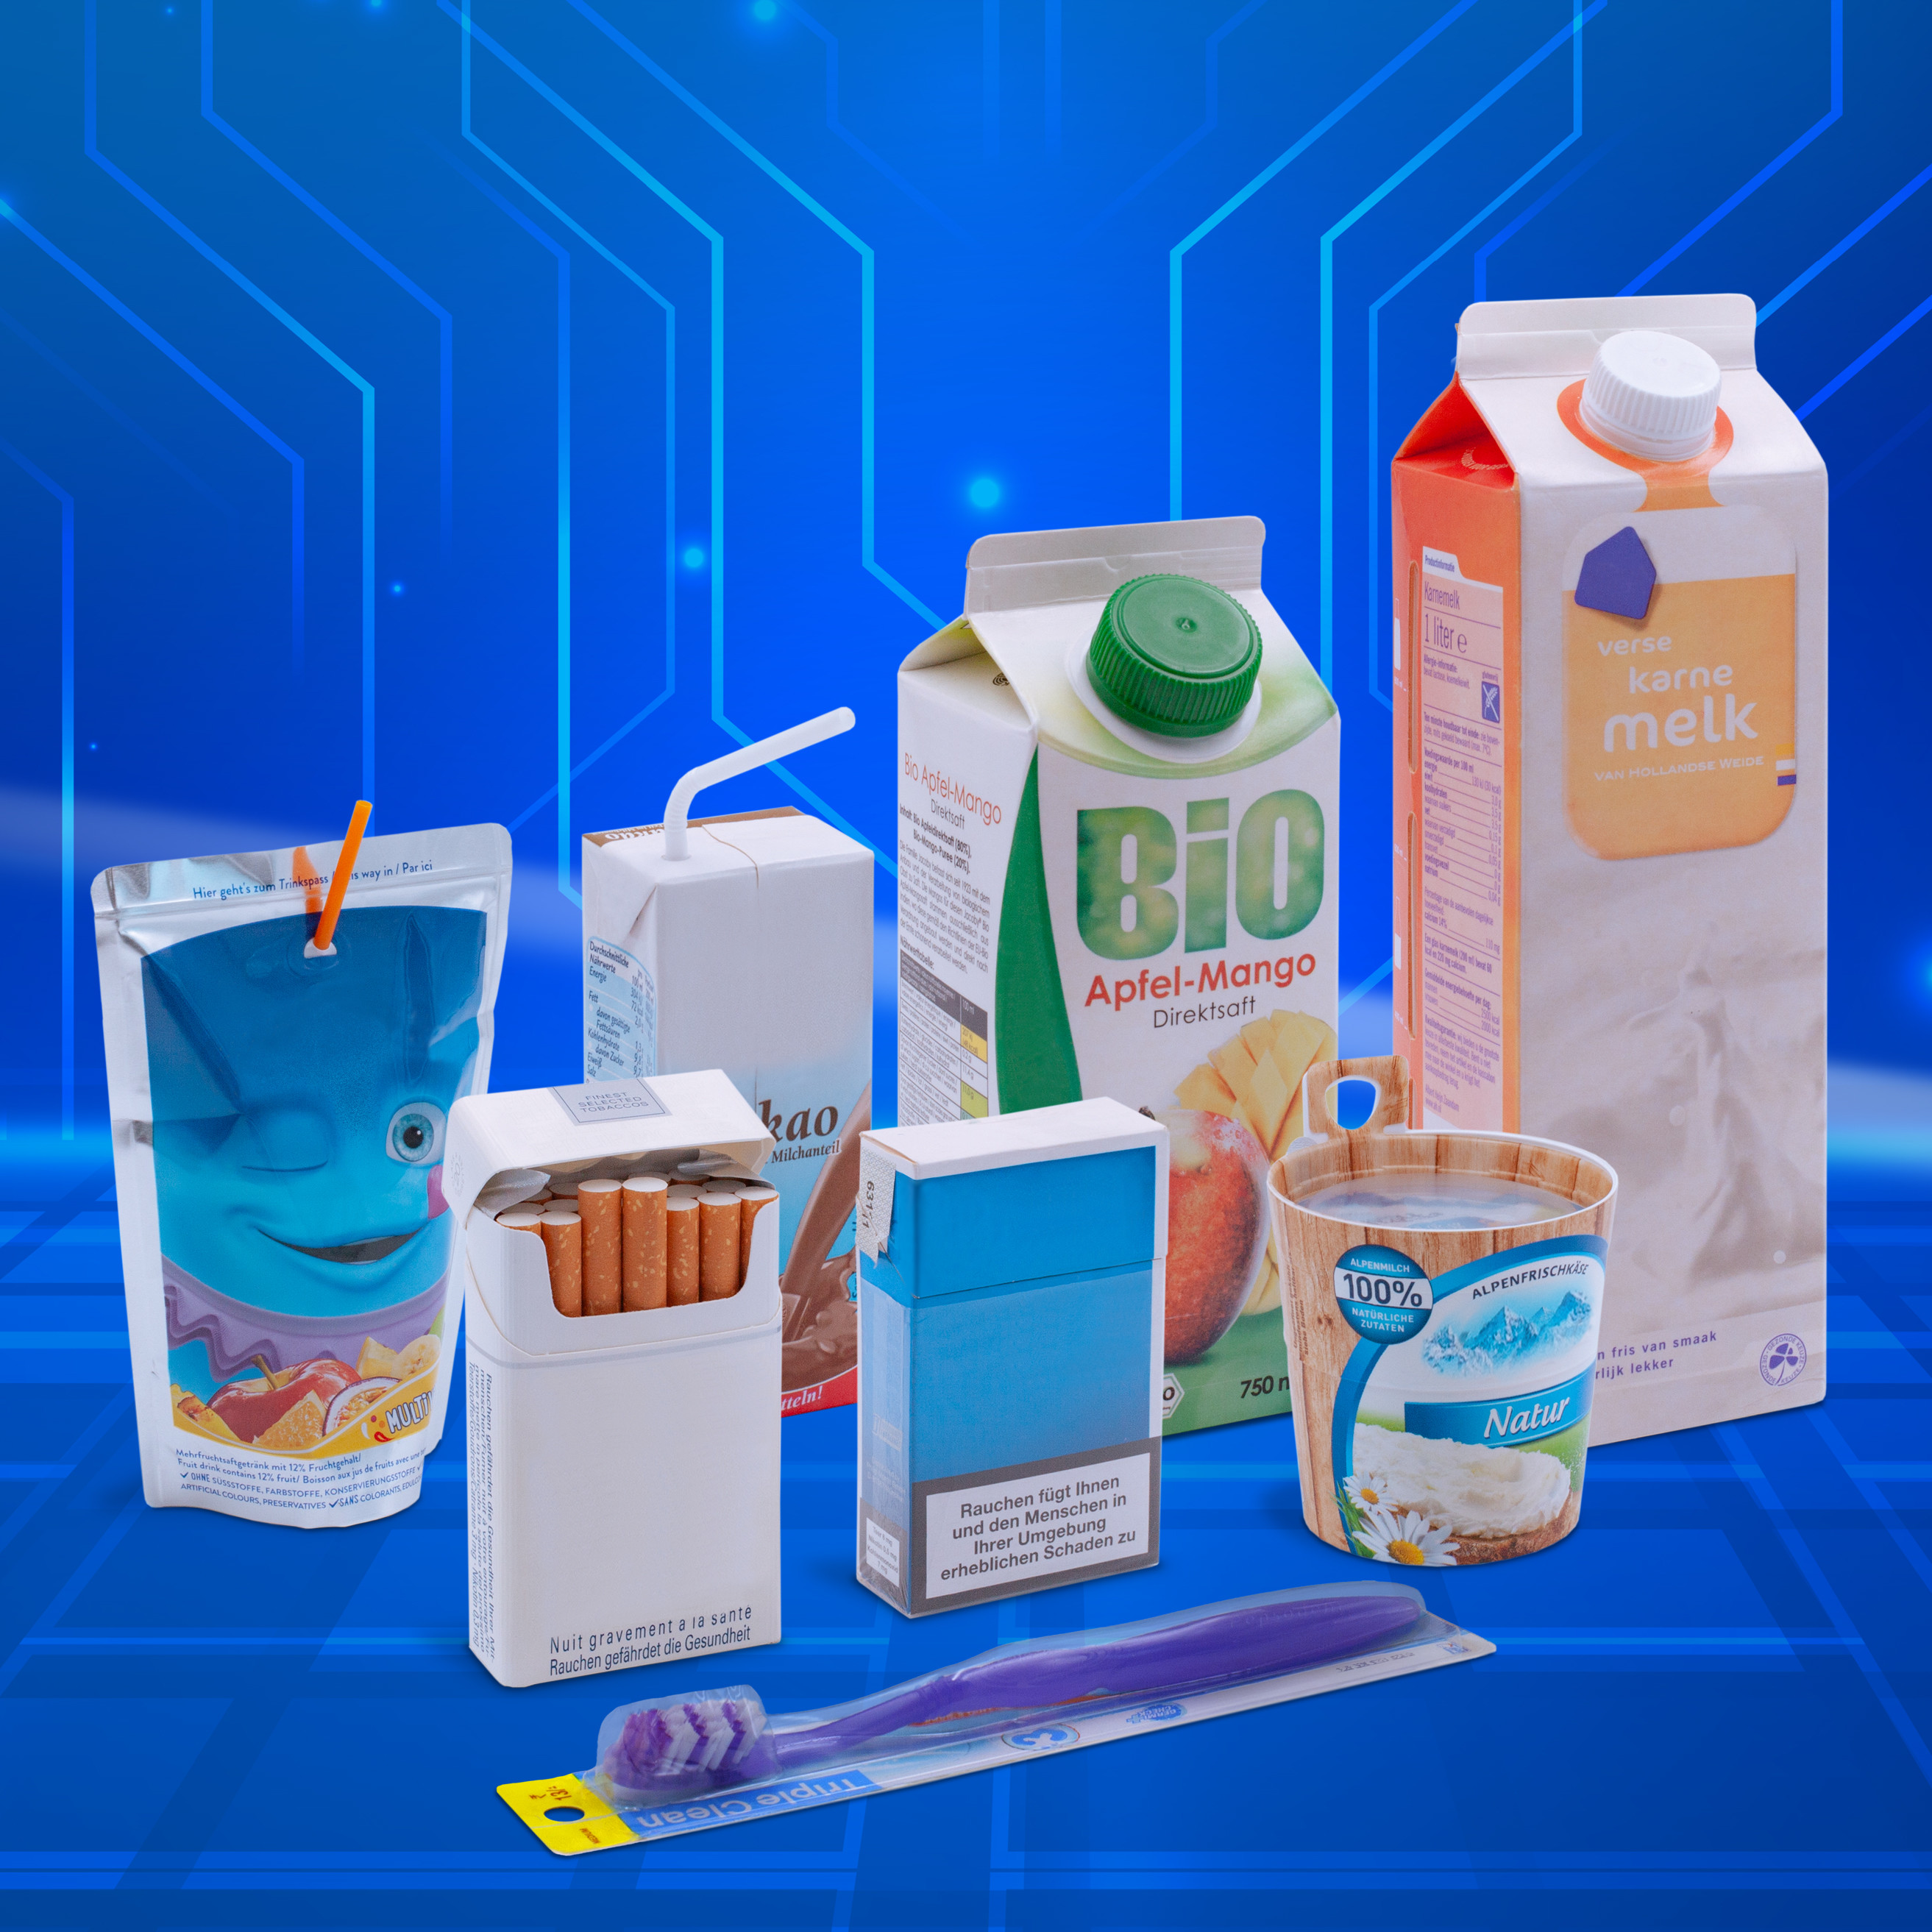 Tetrapacks, Caprisonne, Zigarettenschachteln und Pappbecher auf futuristischem blauen Hintergrund